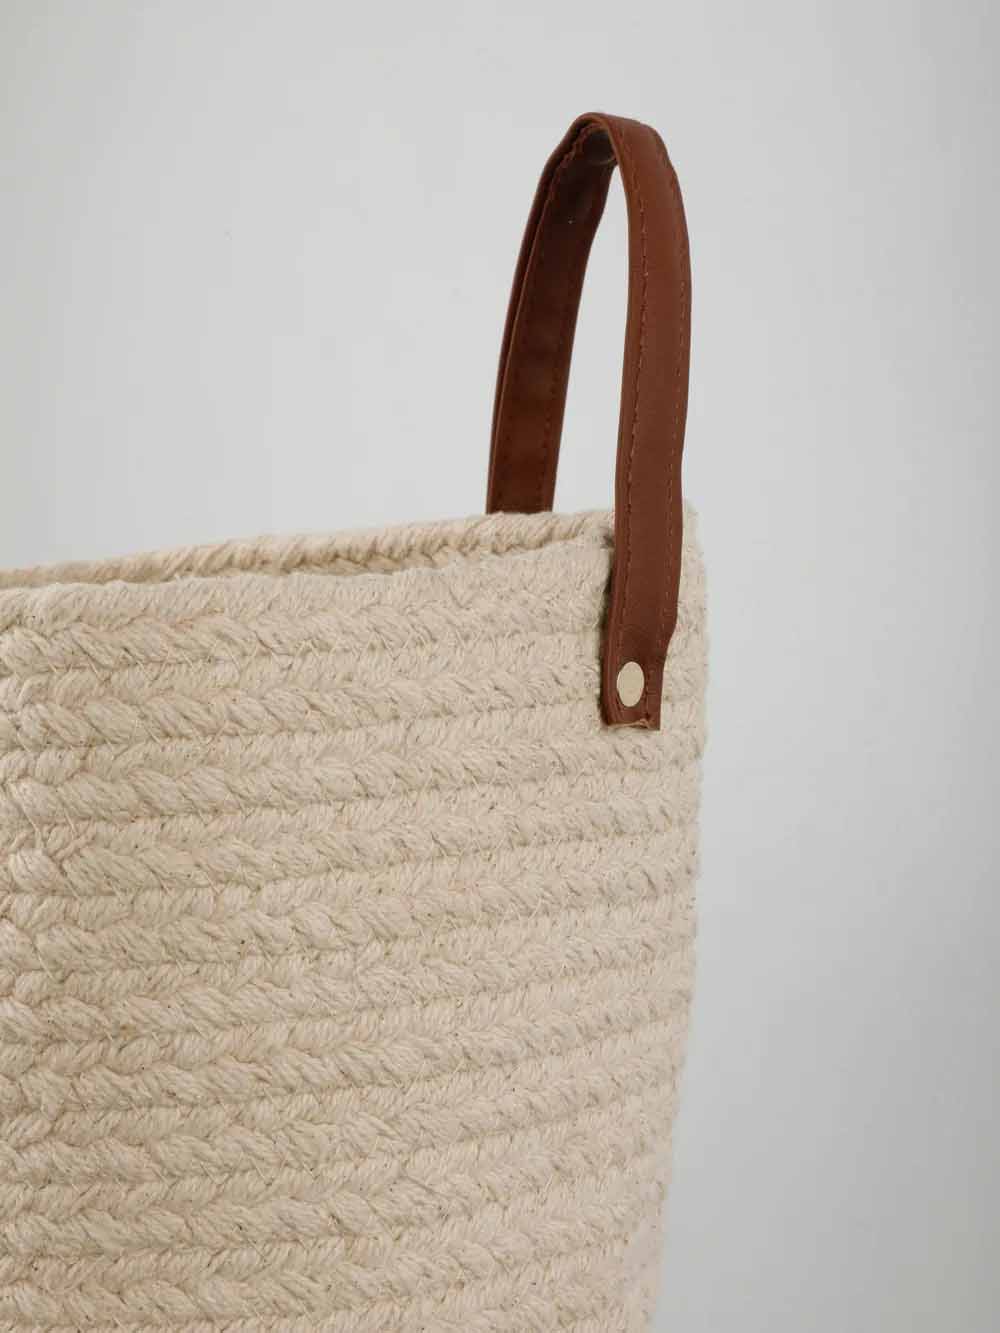 Cotton Plain Basket with Handle - Decor & Living - 5